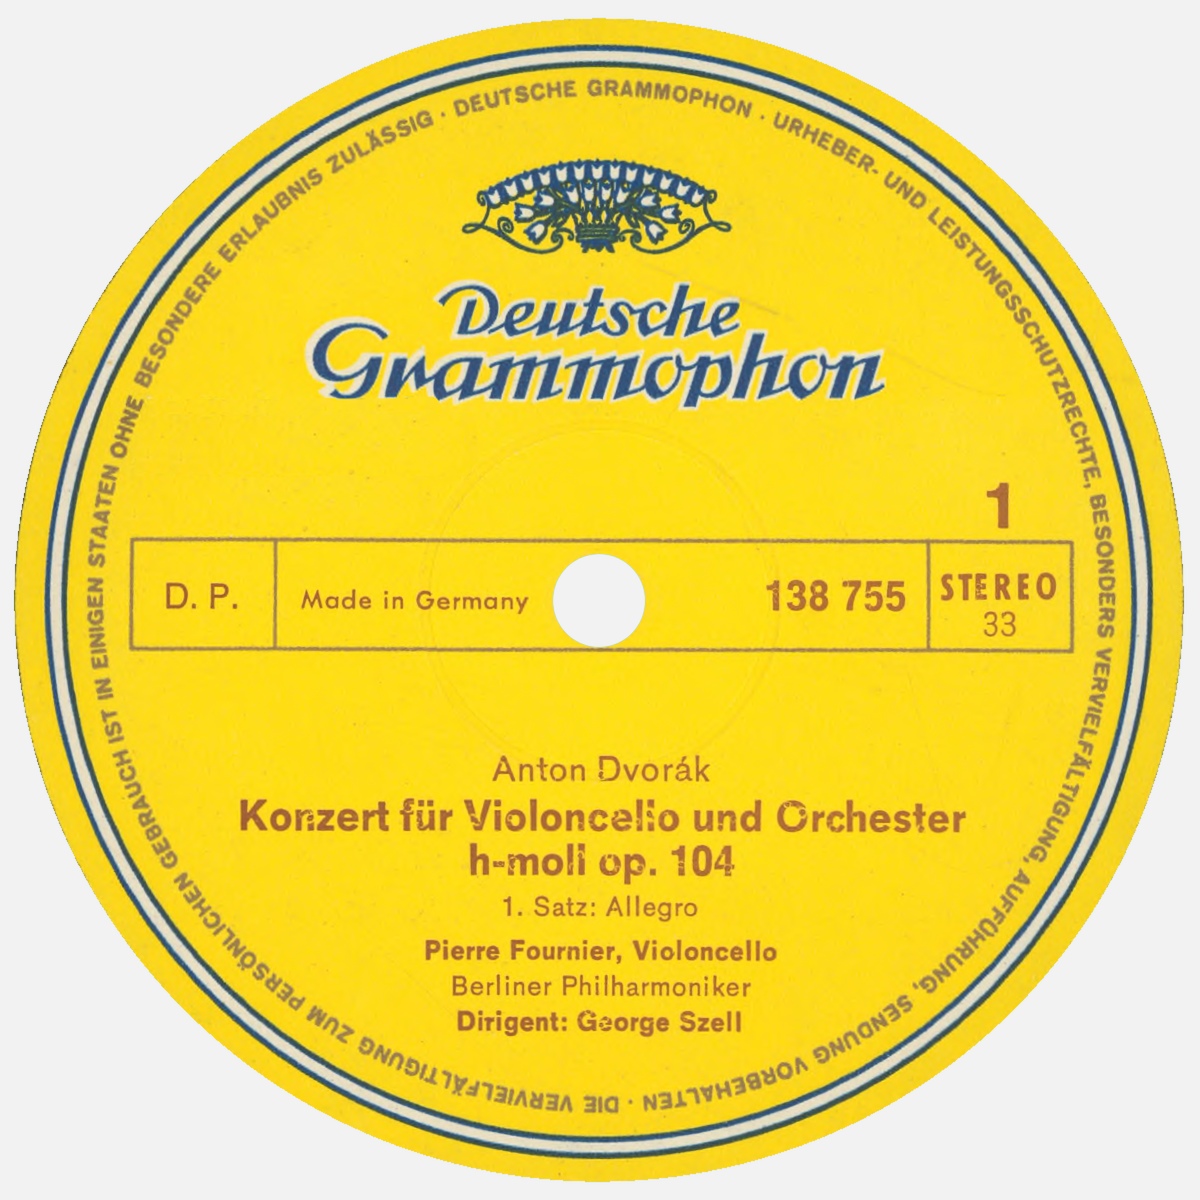 Étiquette recto du disque Deutsche Grammophon SLPM 138 755